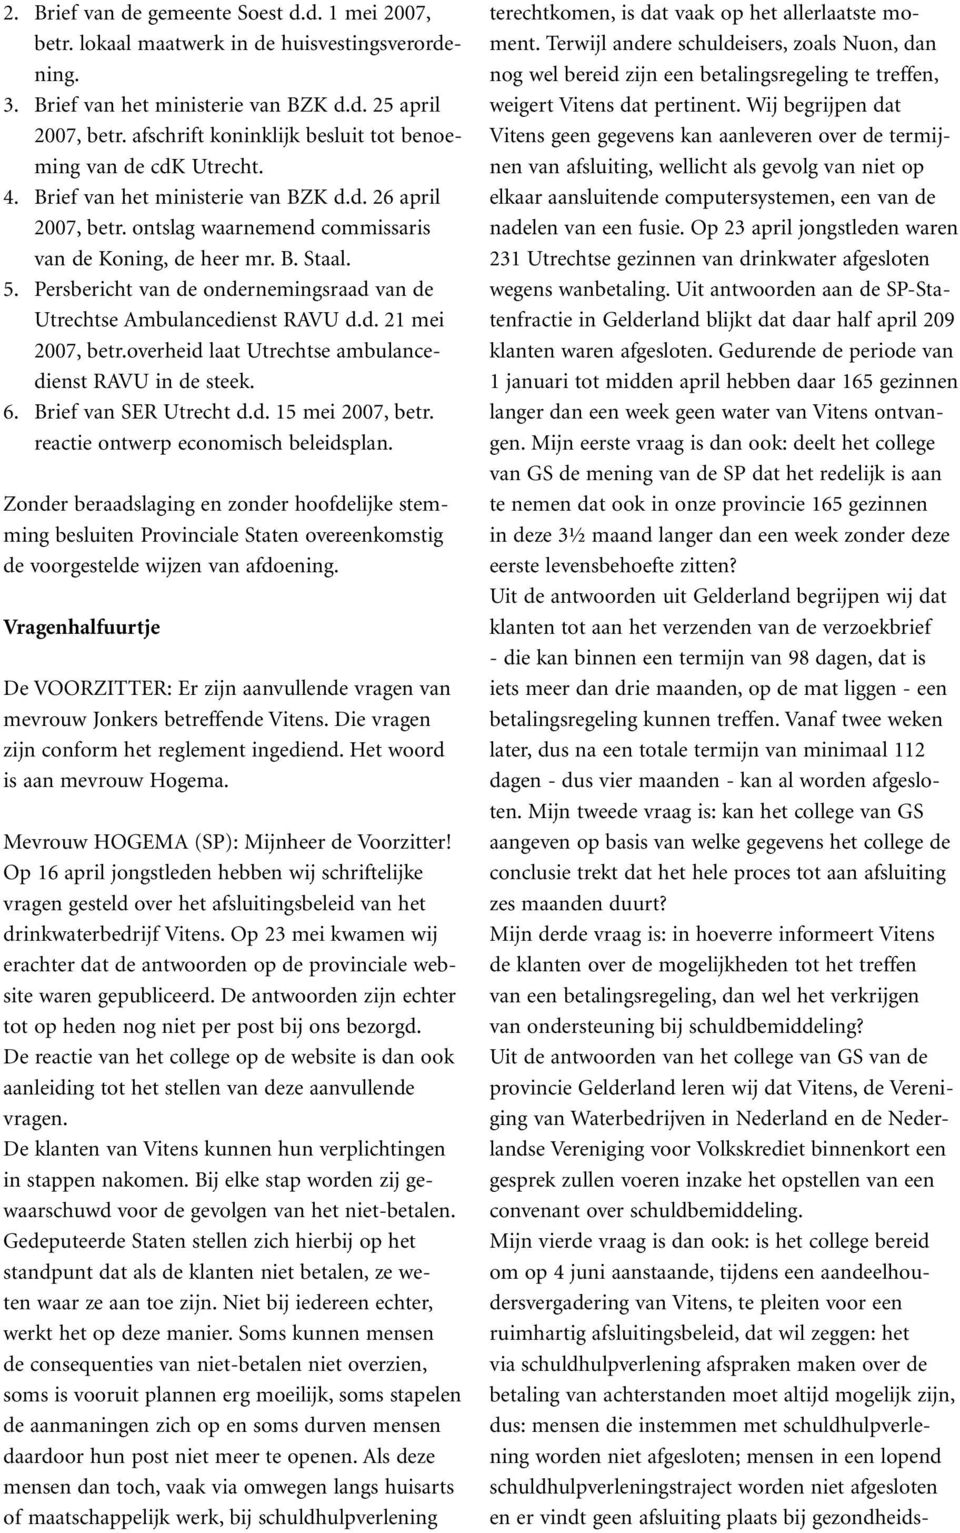 Persbericht van de ondernemingsraad van de Utrechtse Ambulancedienst RAVU d.d. 21 mei 2007, betr.overheid laat Utrechtse ambulancedienst RAVU in de steek. 6. Brief van SER Utrecht d.d. 15 mei 2007, betr.